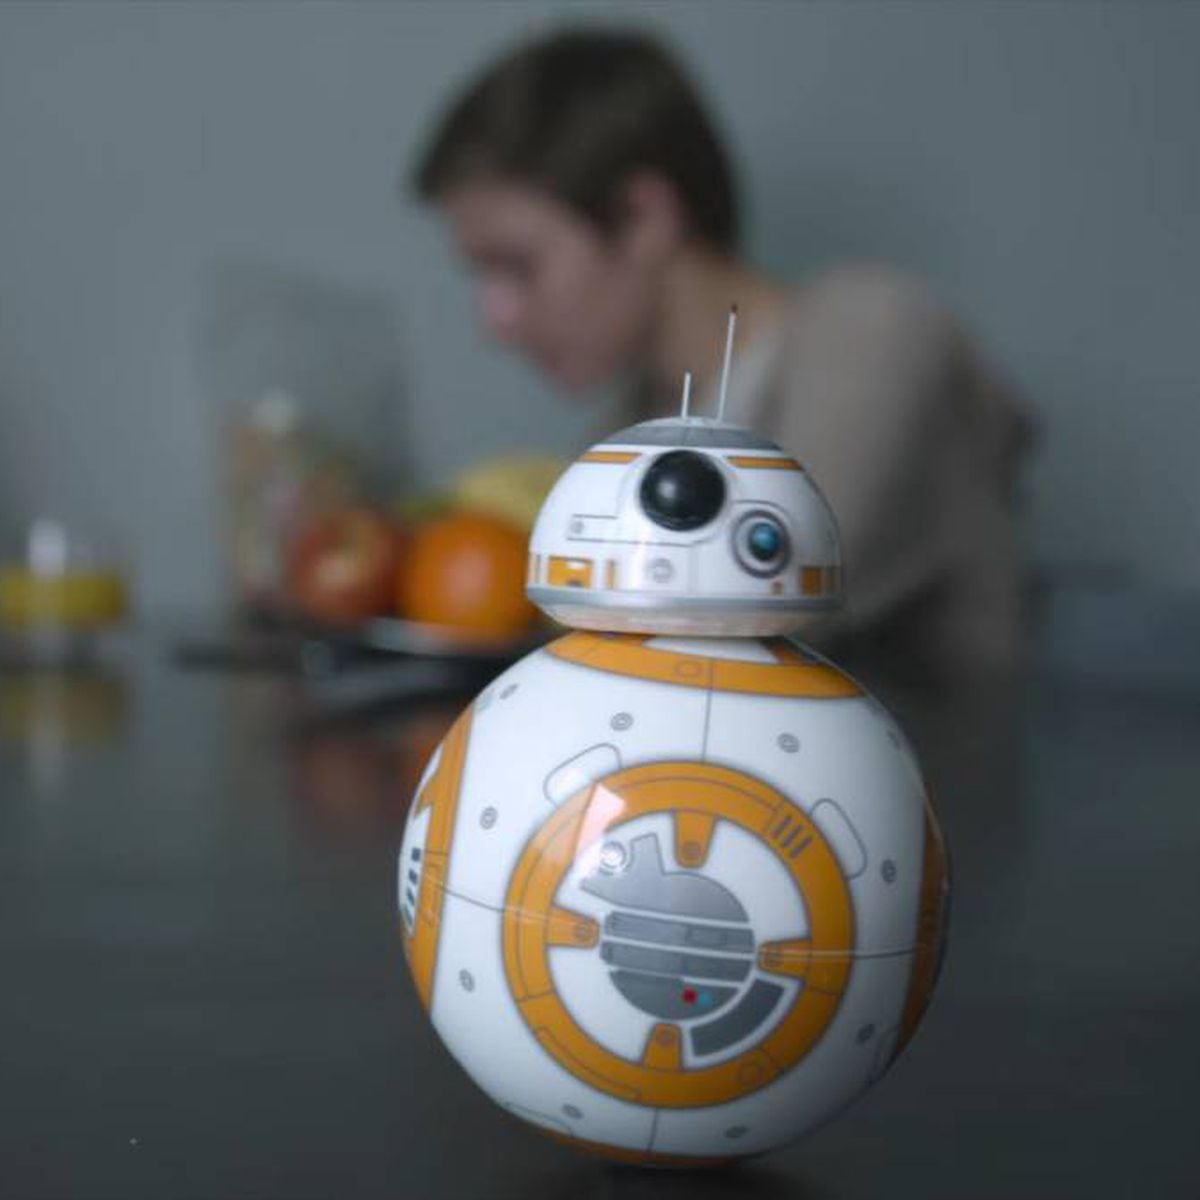 Mejores gadgets para regalar a un fan de Star Wars en Navidad - Meristation